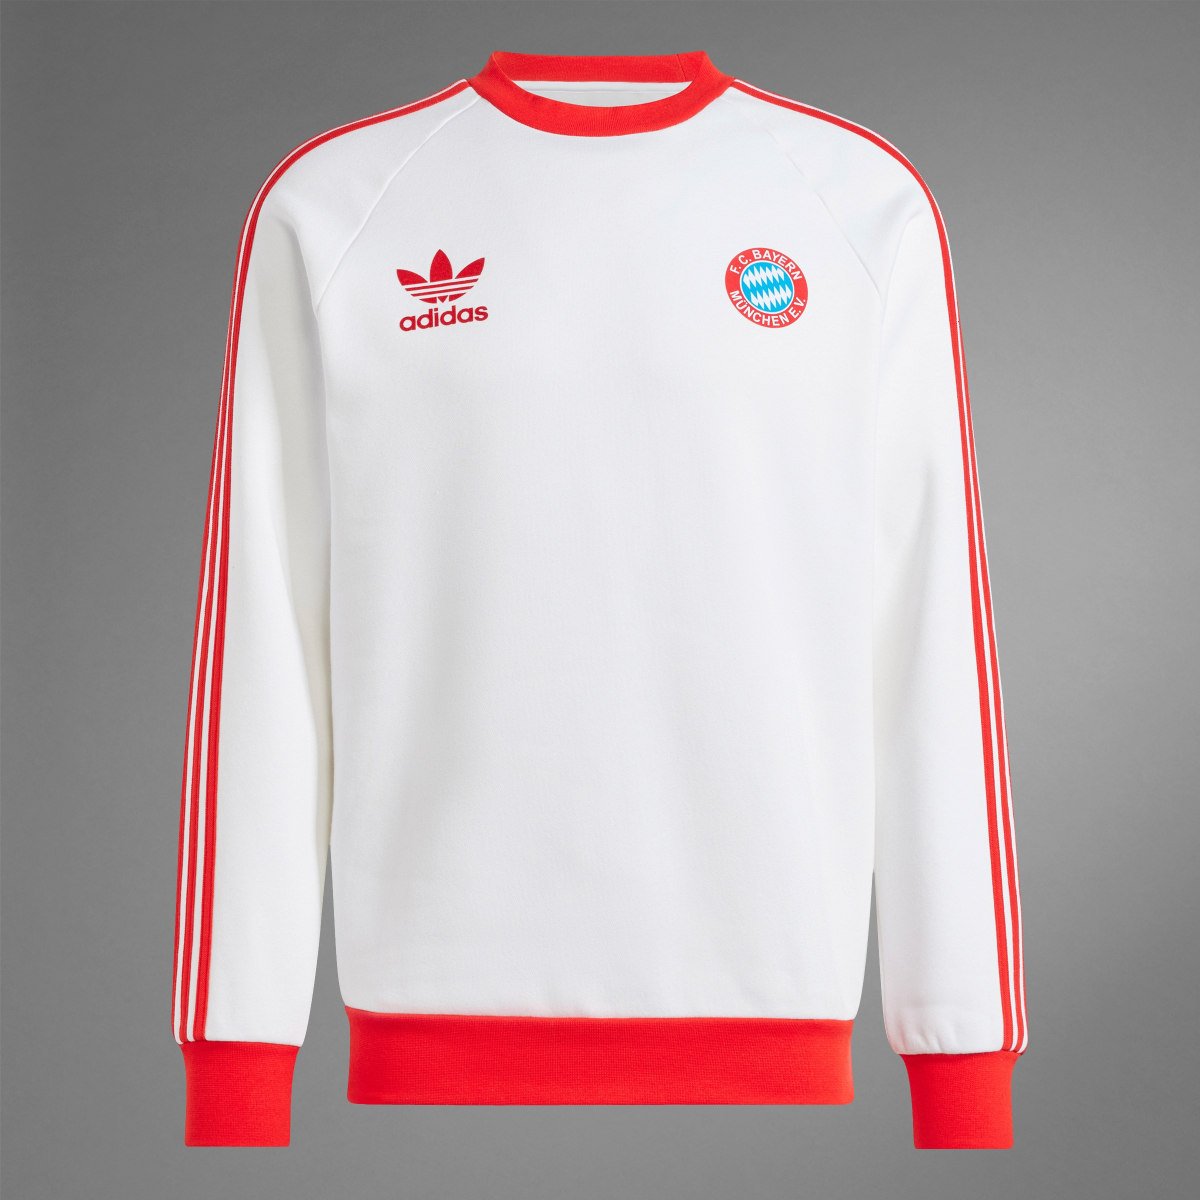 Adidas Sweatshirt Originals do FC Bayern München. 9